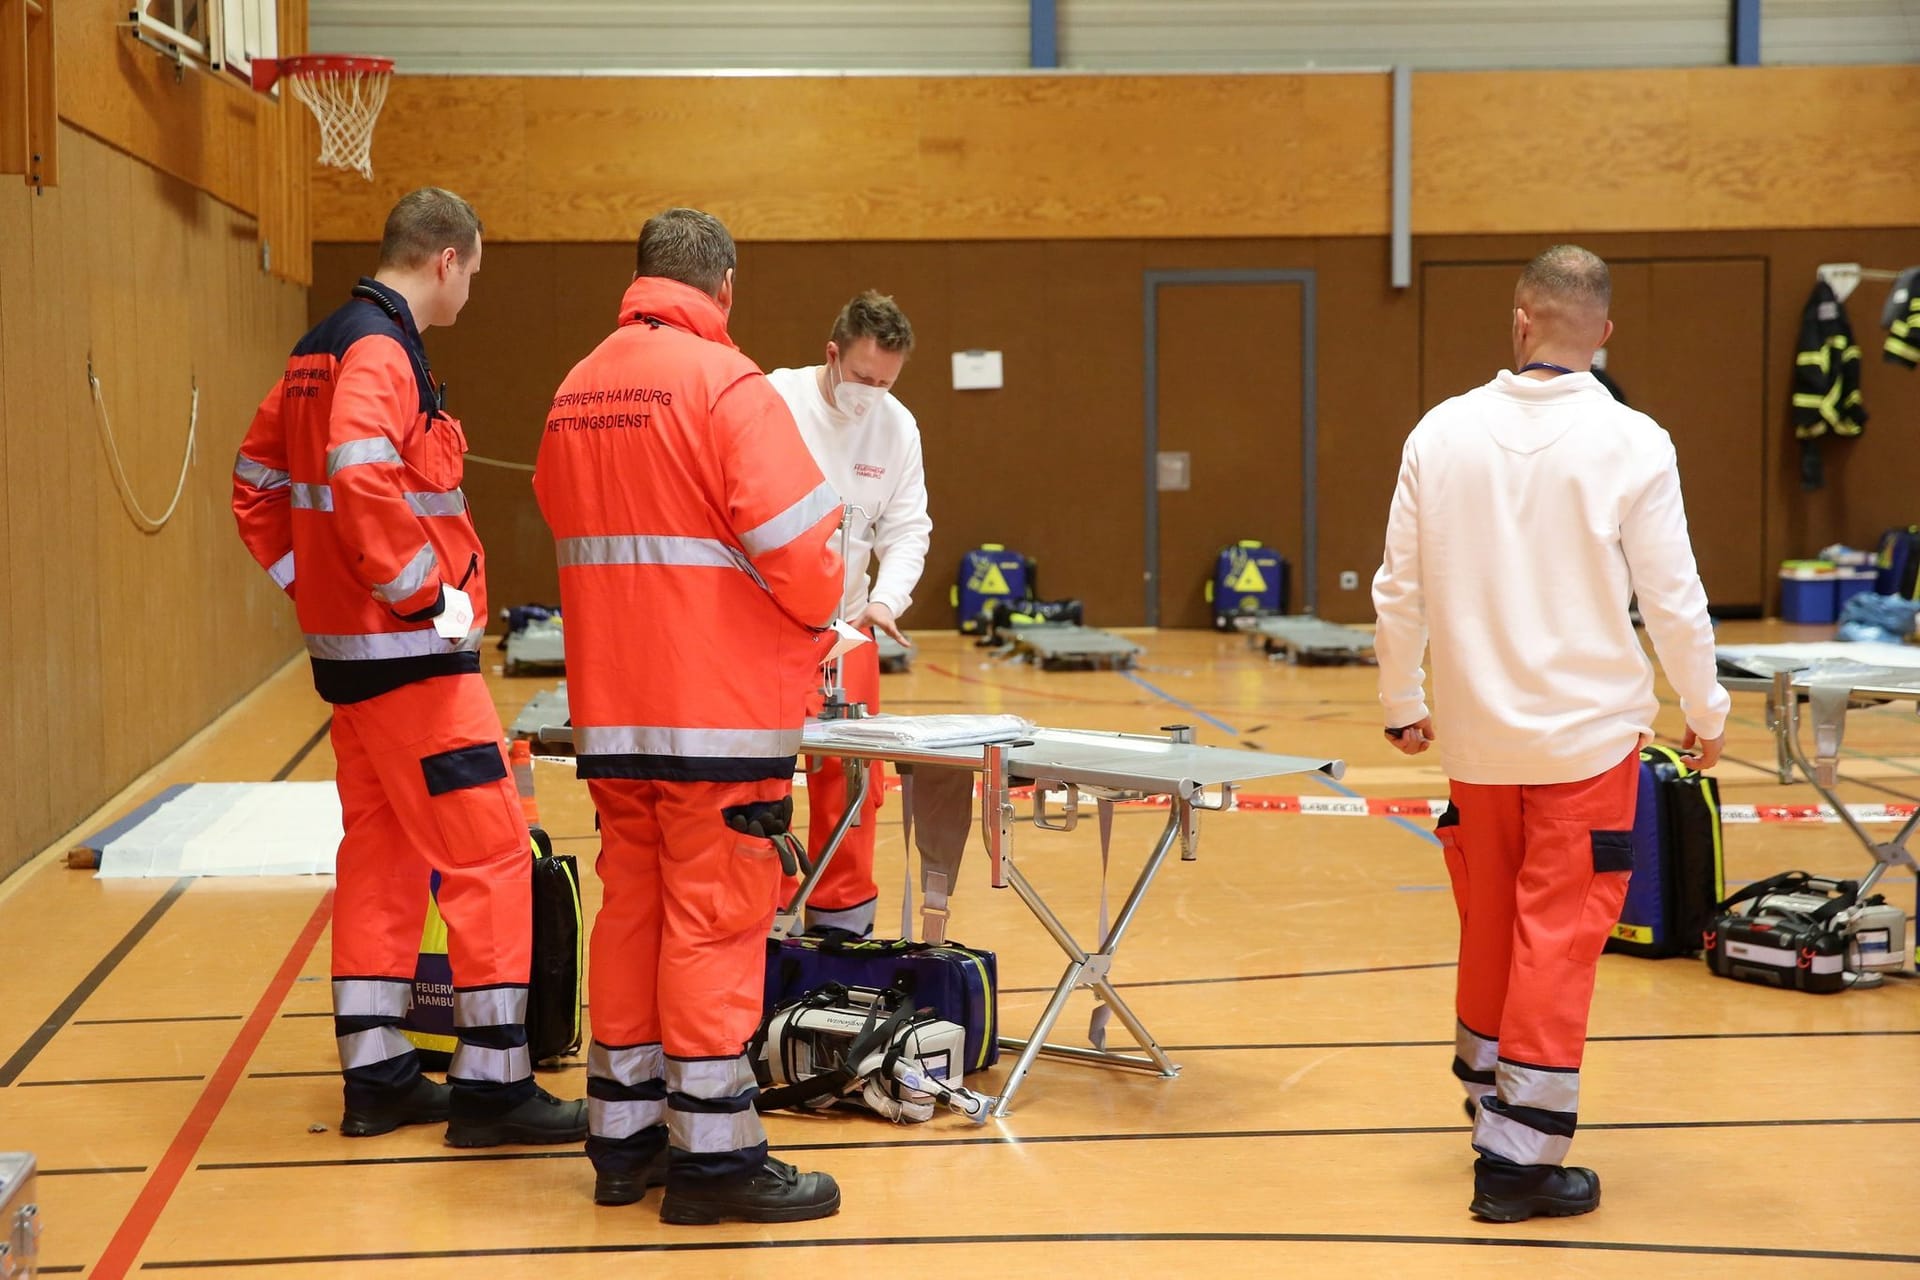 Rettungskräfte in einer Turnhalle: Die Feuerwehr Hamburg hatte ein Anlauf- und Behandlungszentrum für Verletzungen durch das Glatteis aufgebaut.